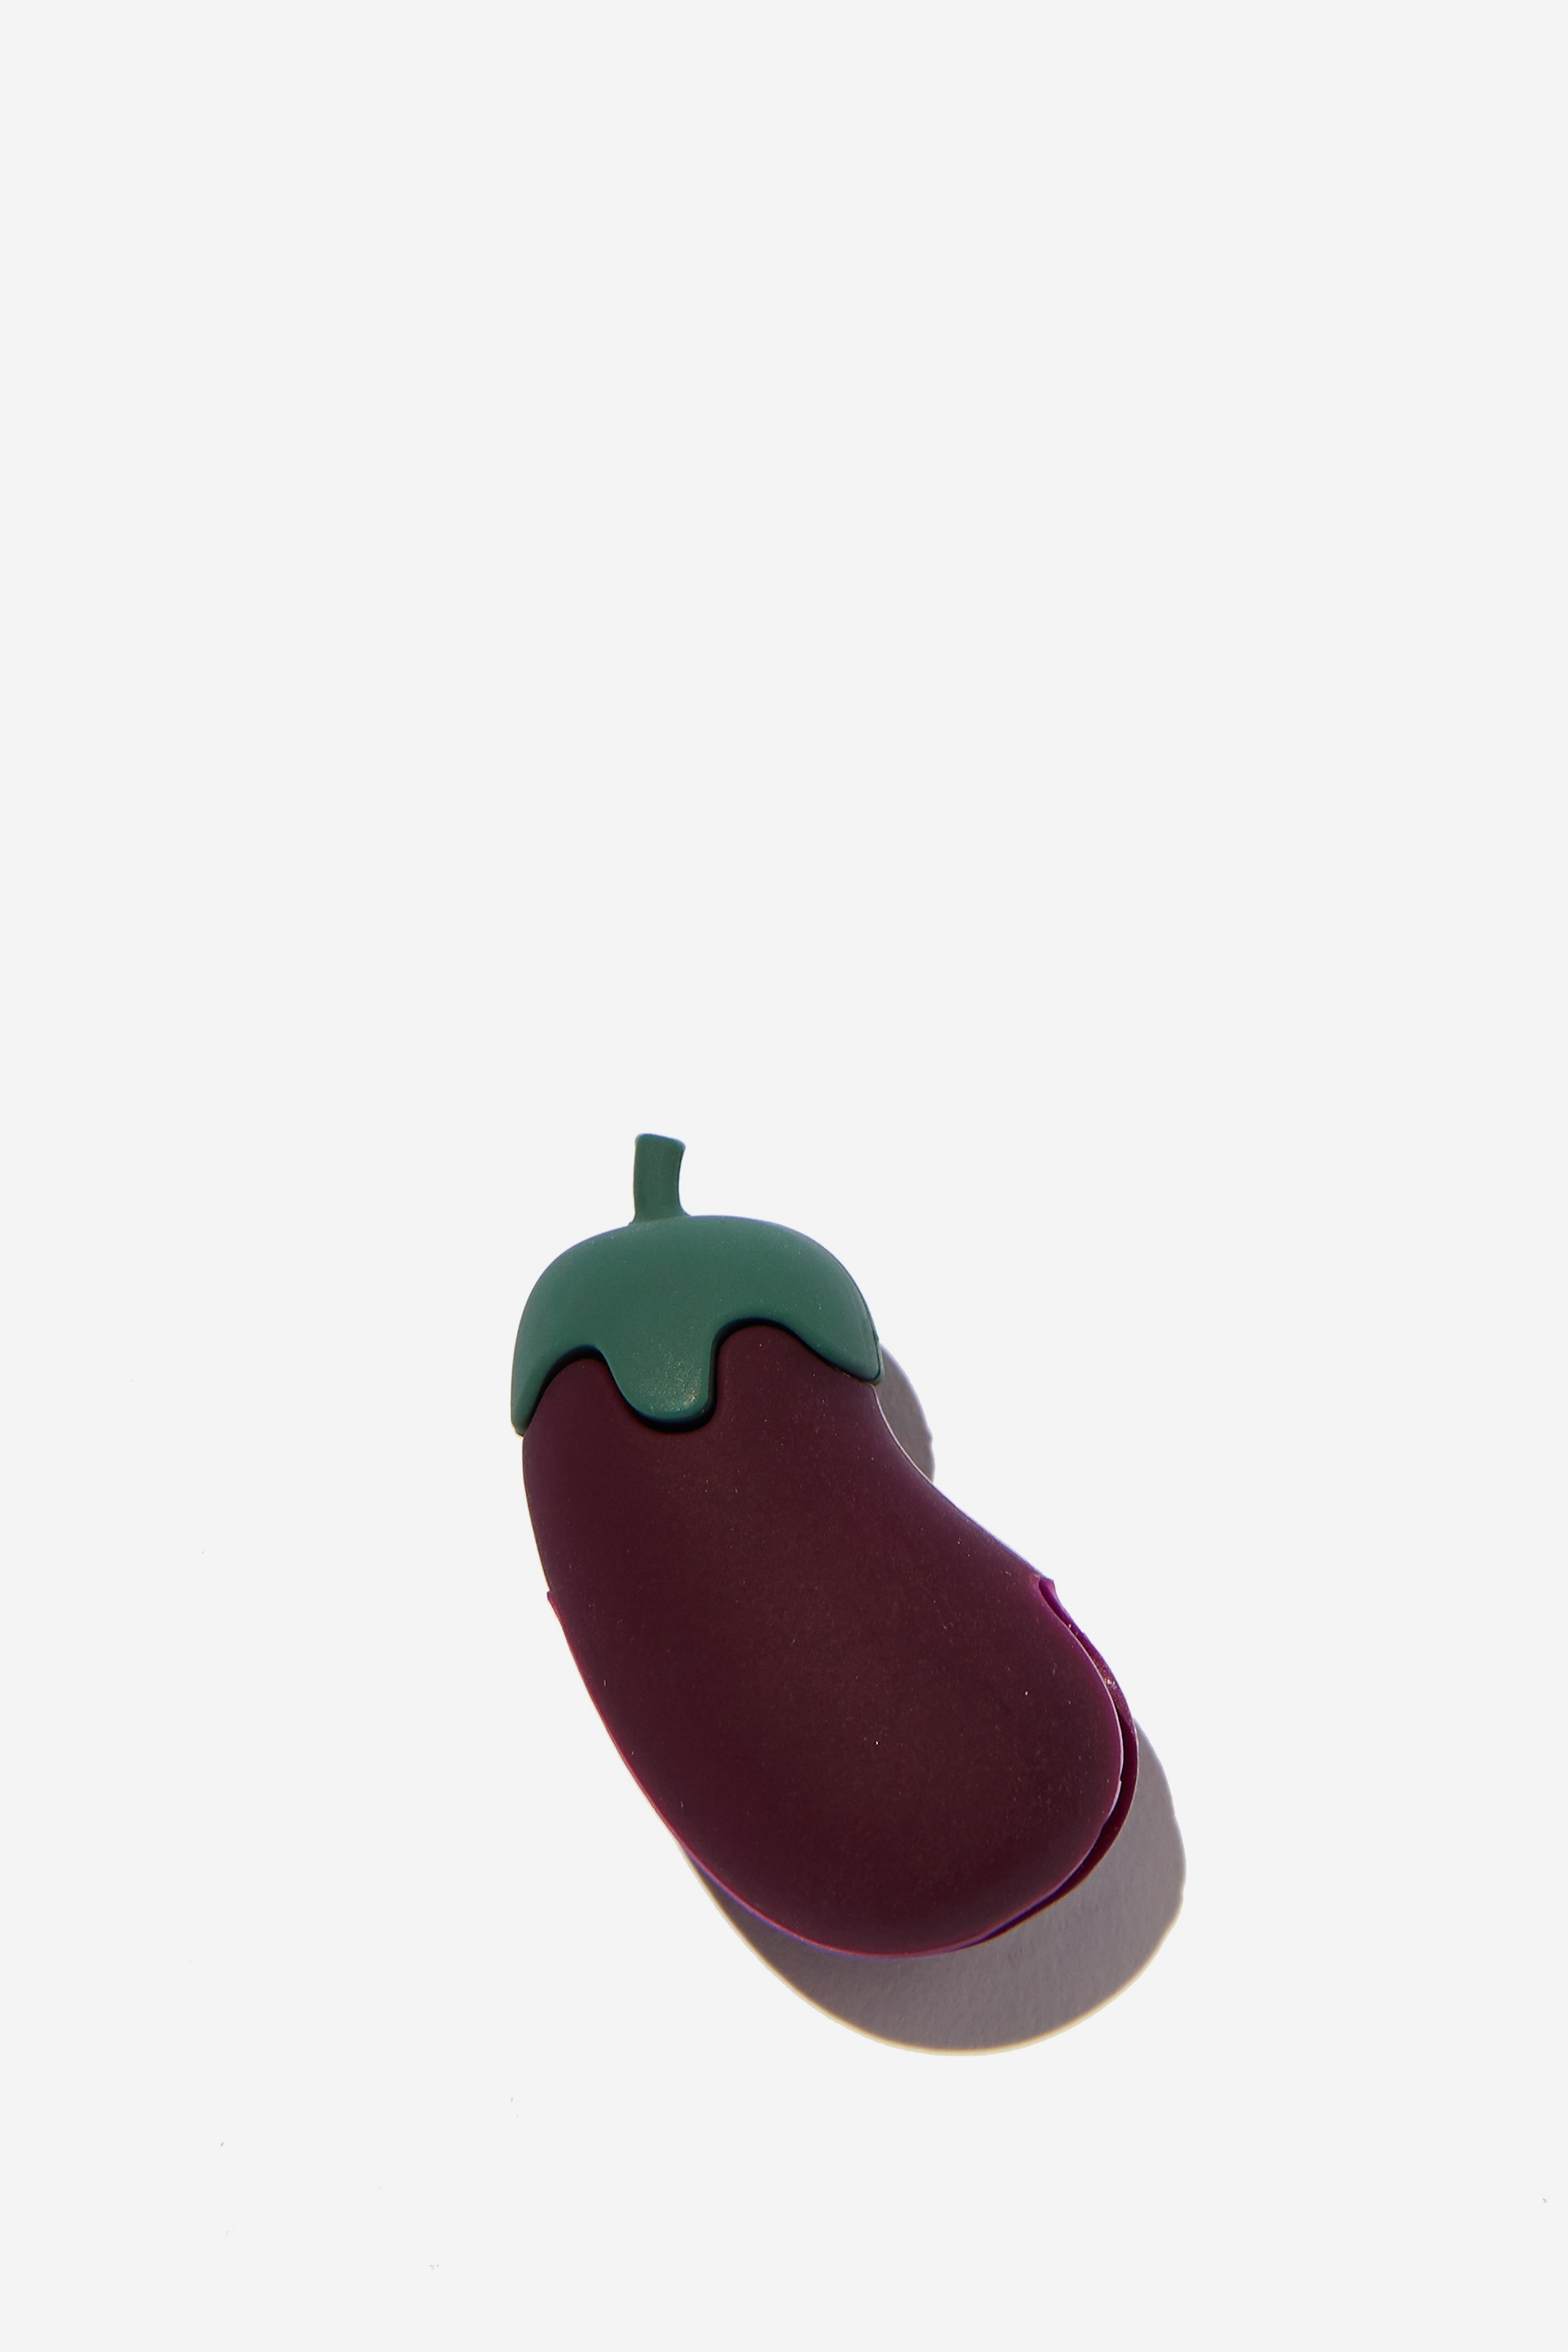 Typo - Bad Vibes Webcam Blocker - Eggplant